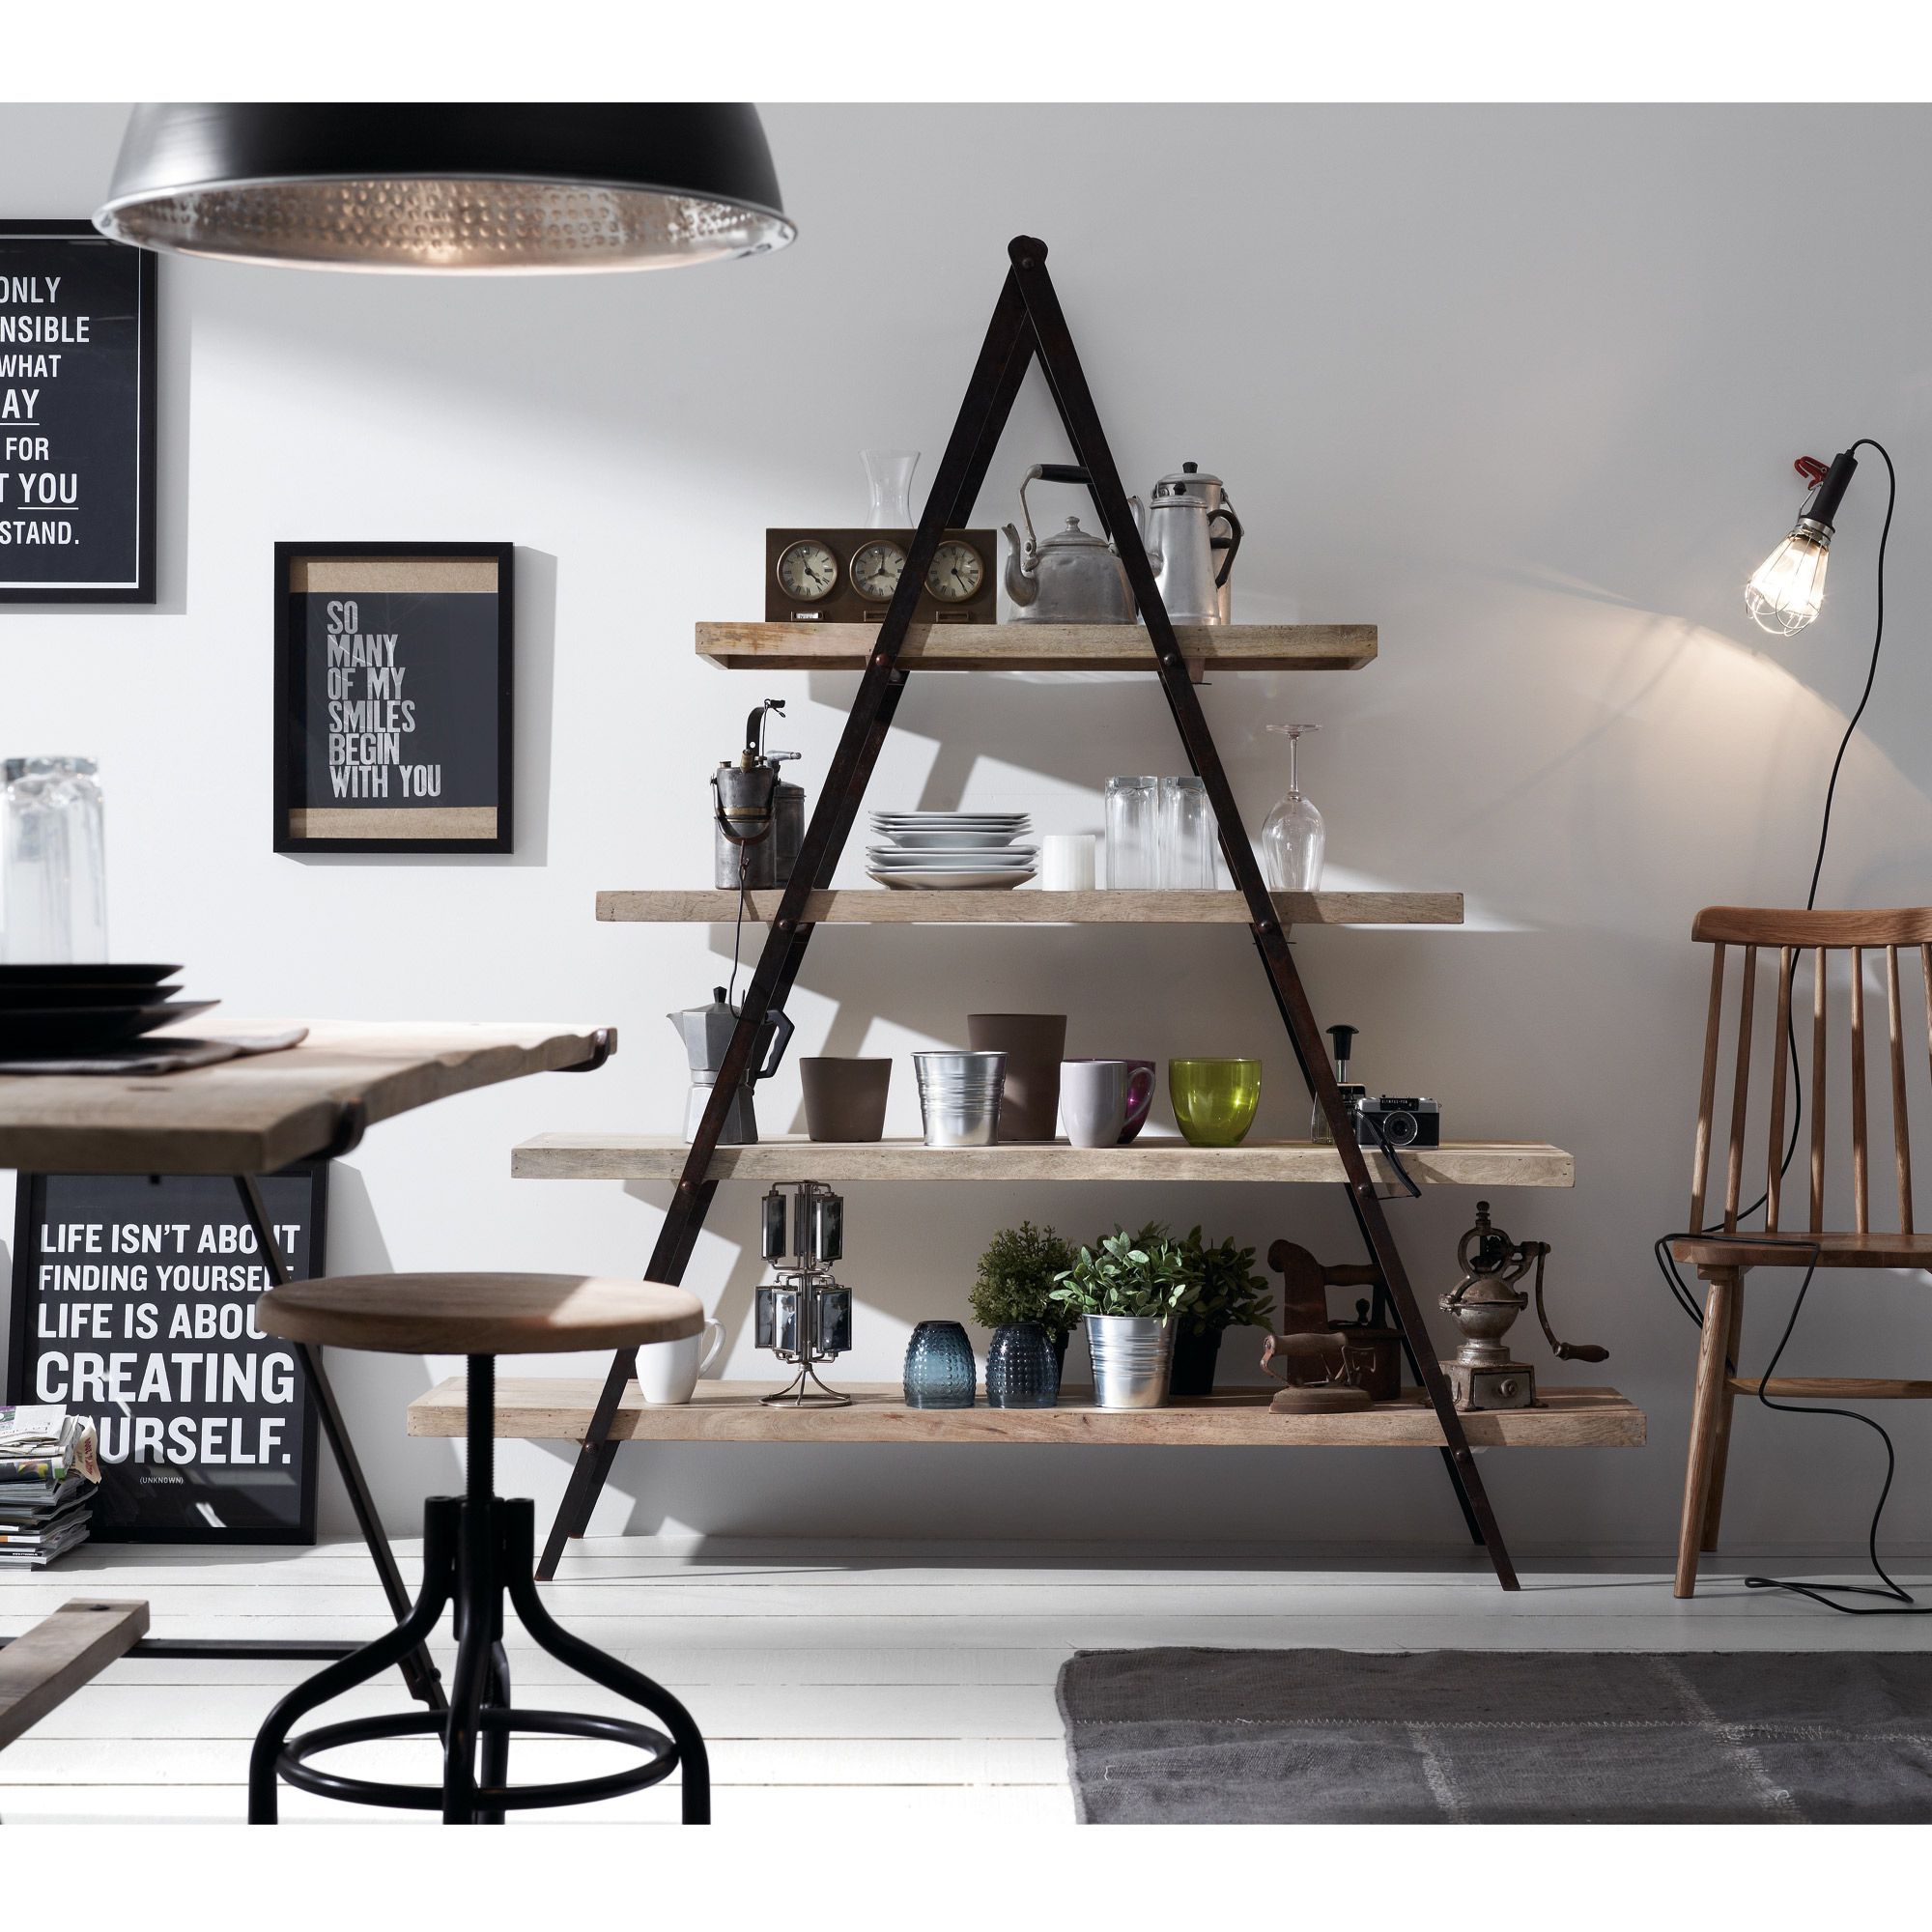 Industriella Erutna Collection möbler med vintage charm